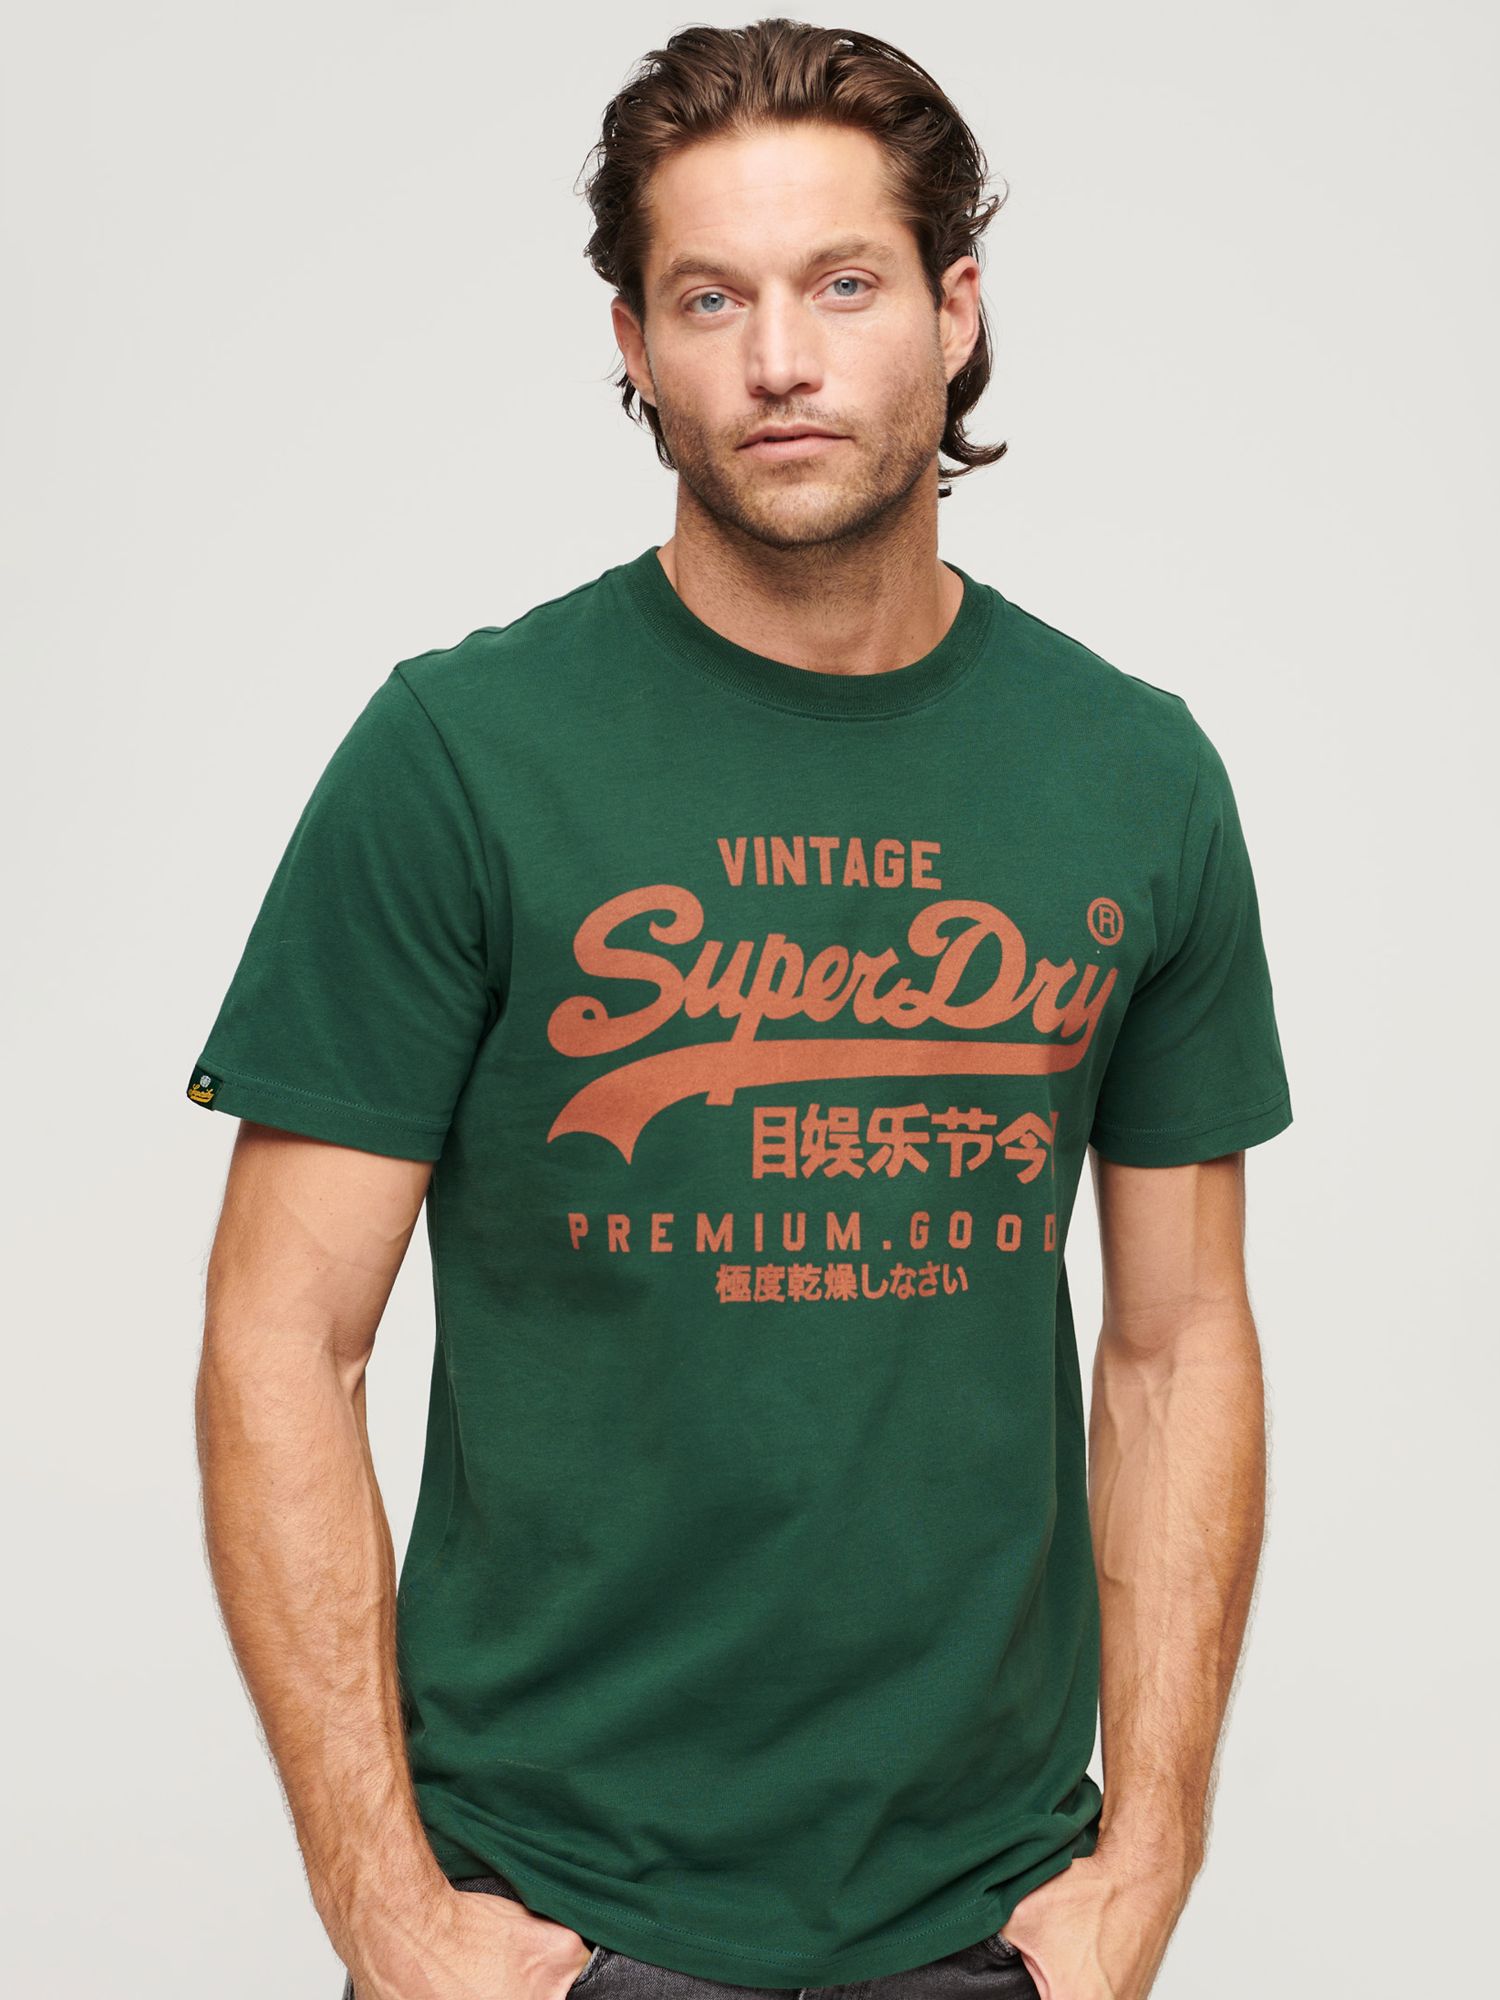 Футболка Superdry Vintage Logo Premium Goods, зеленая эмаль